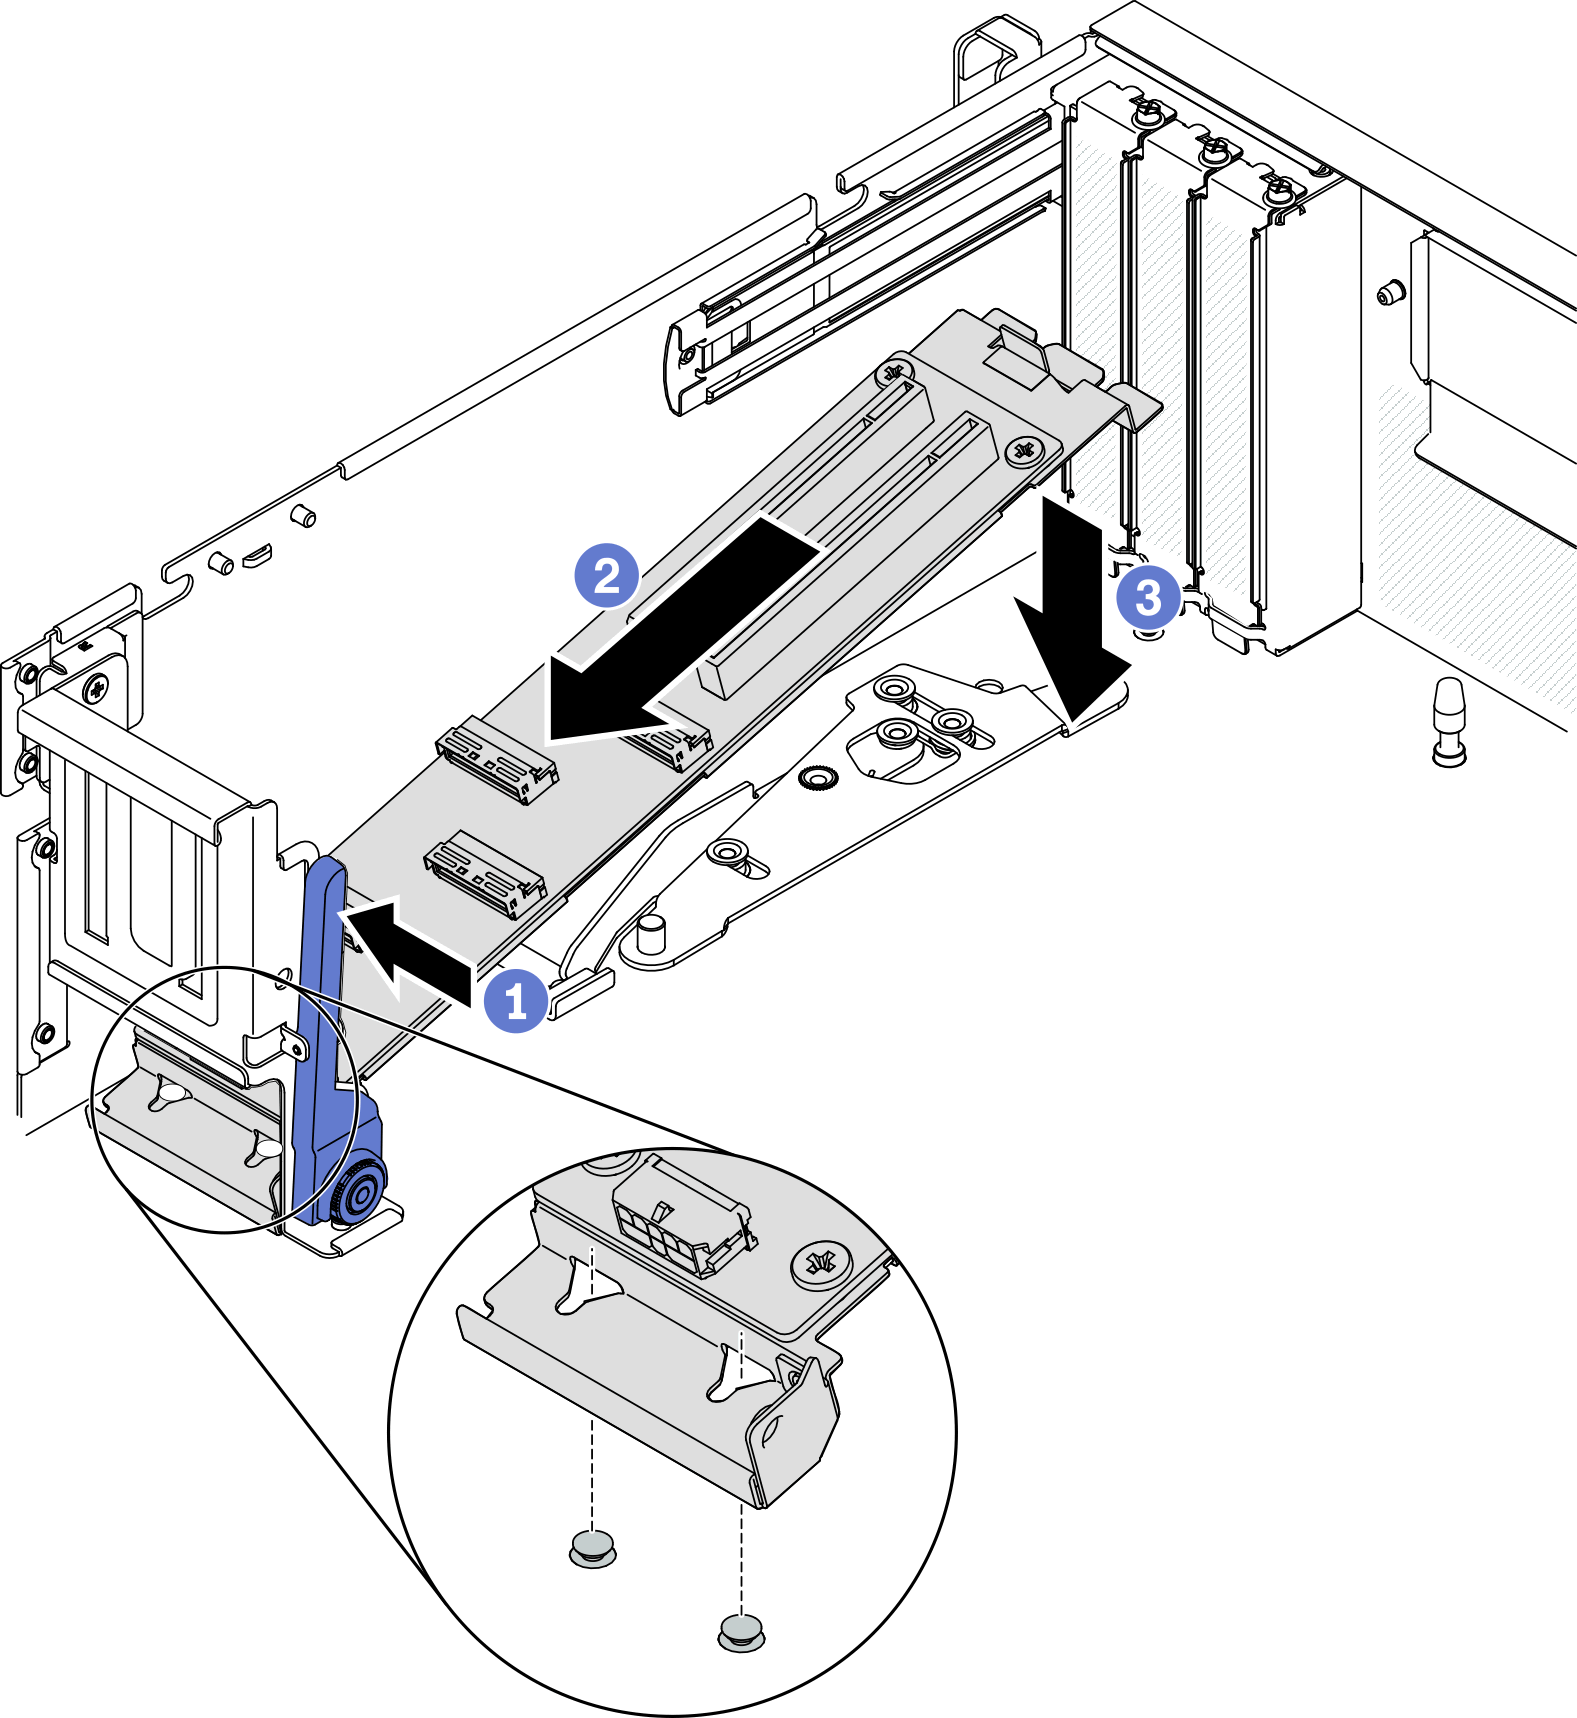 Placing the módulo de placa de expansão de E/S frontal into the chassis